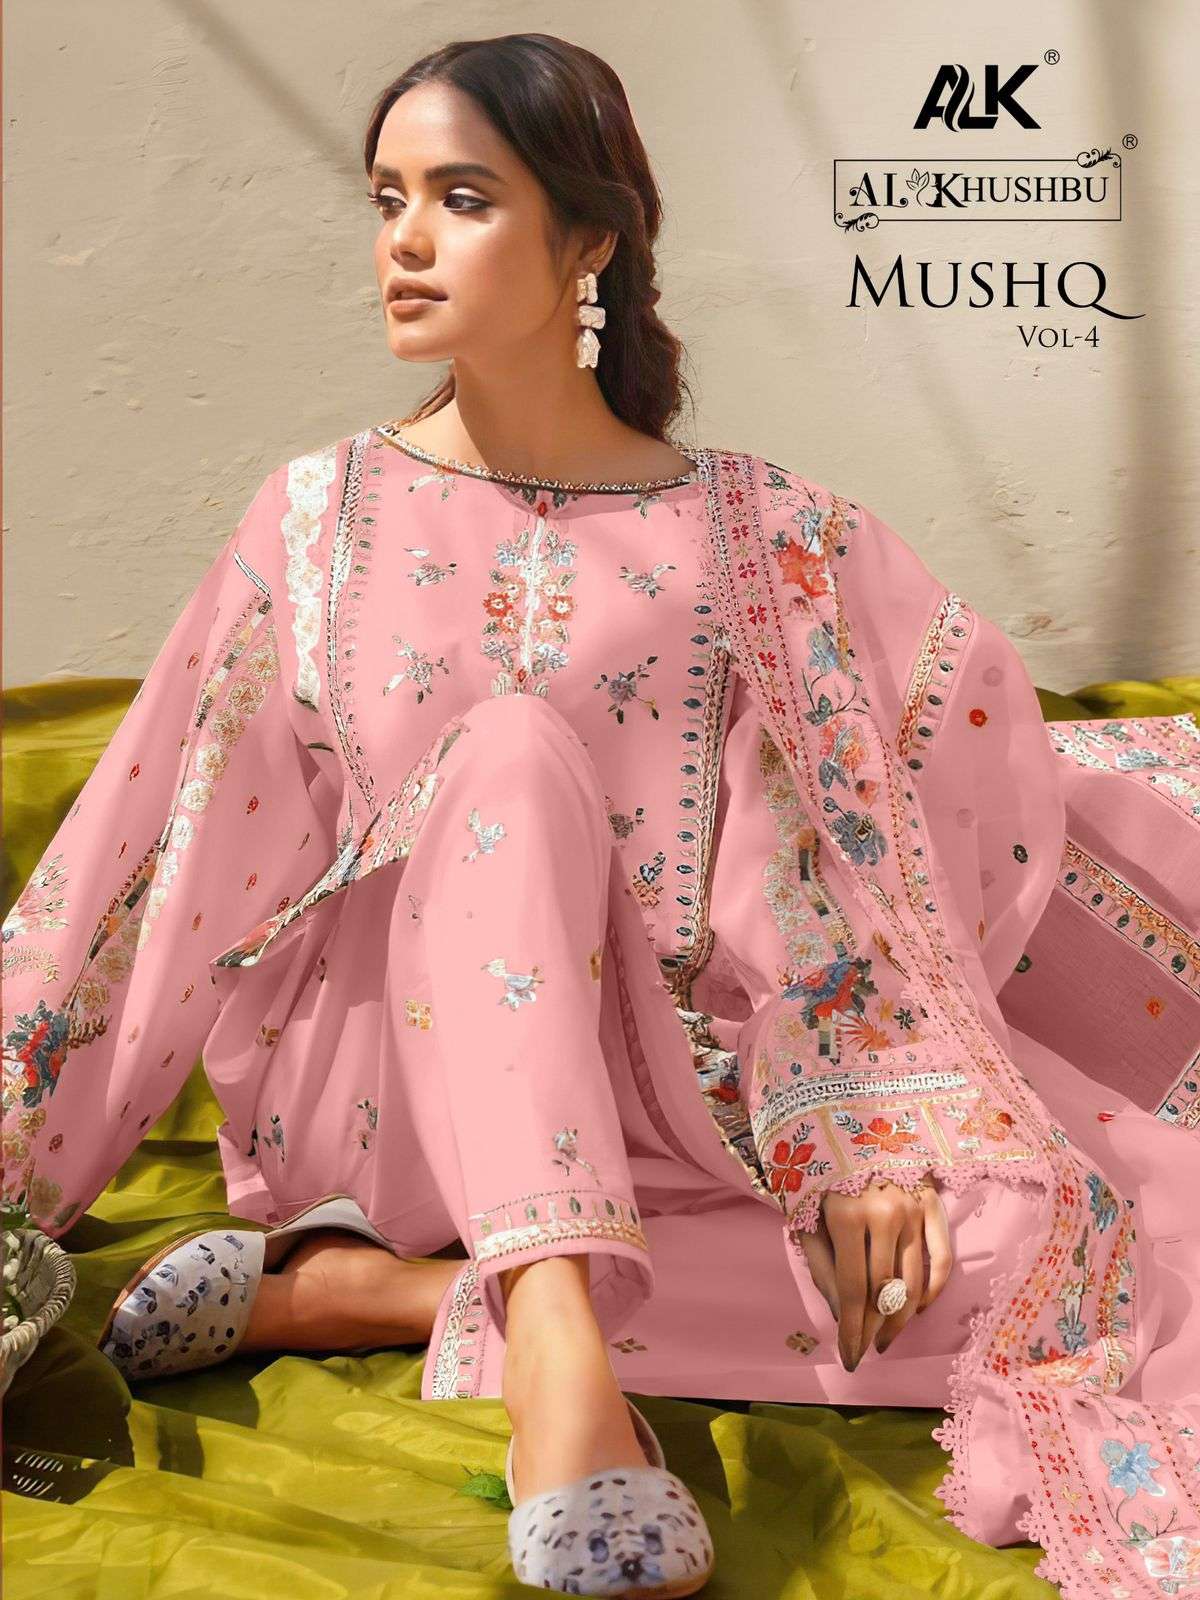 Al Khushbu Mushq Vol 4 5085 Colors Pakistani Fancy Cotton Suit Catalog Dealers